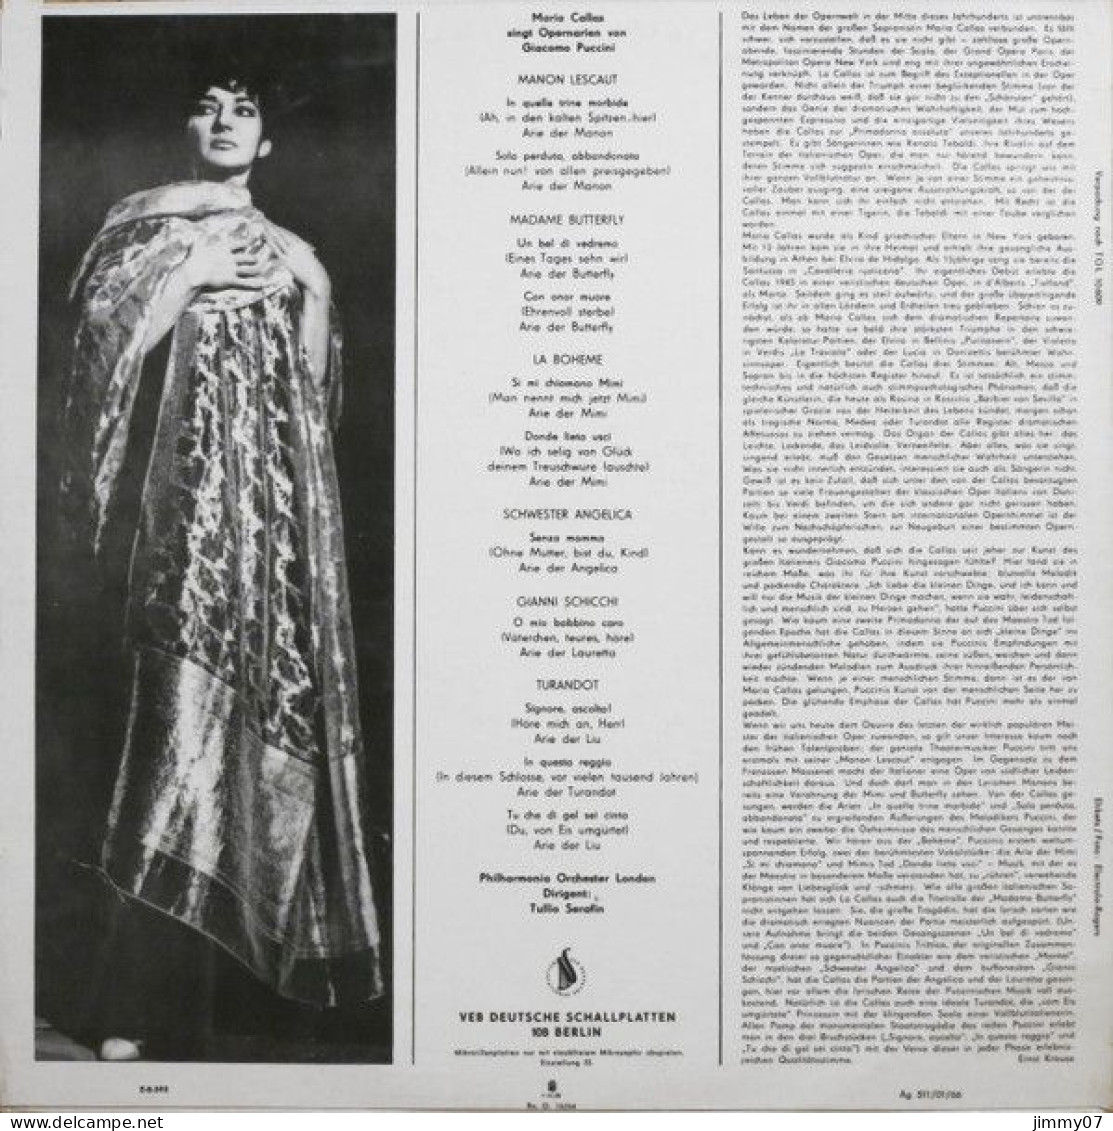 Maria Callas, Giacomo Puccini - Maria Callas Singt Opernarien Von Giacomo Puccini (LP, Mono) - Clásica